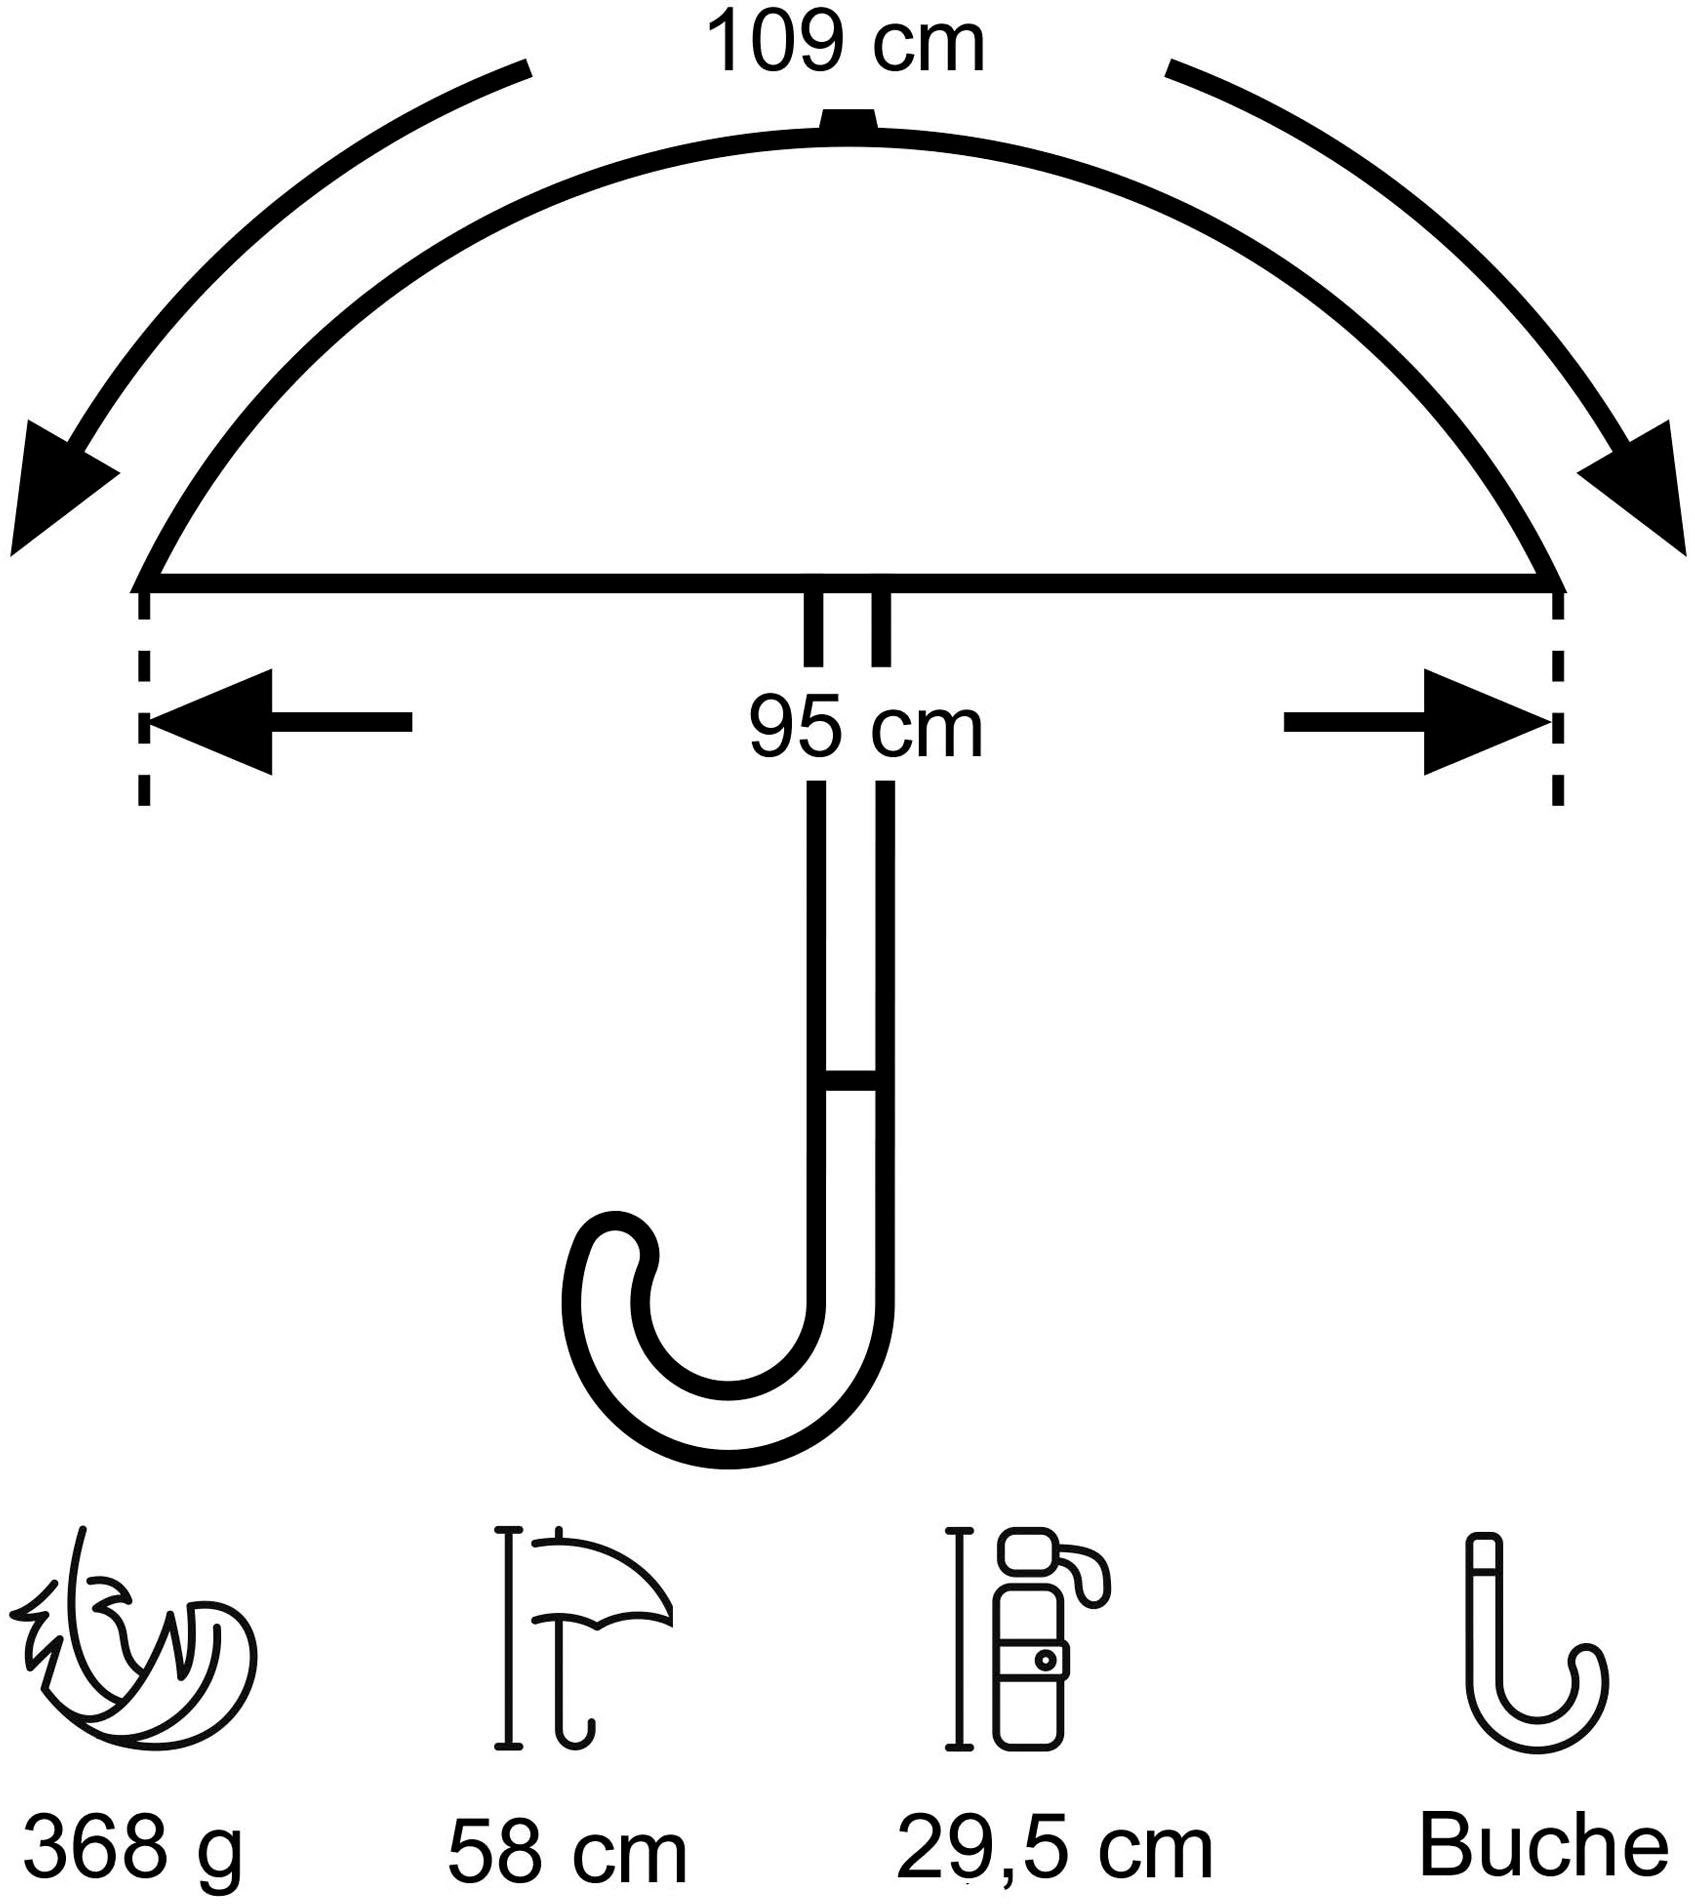 Taschenregenschirm Umwelt-Taschenschirm, pink Punkte EuroSCHIRM® marine,